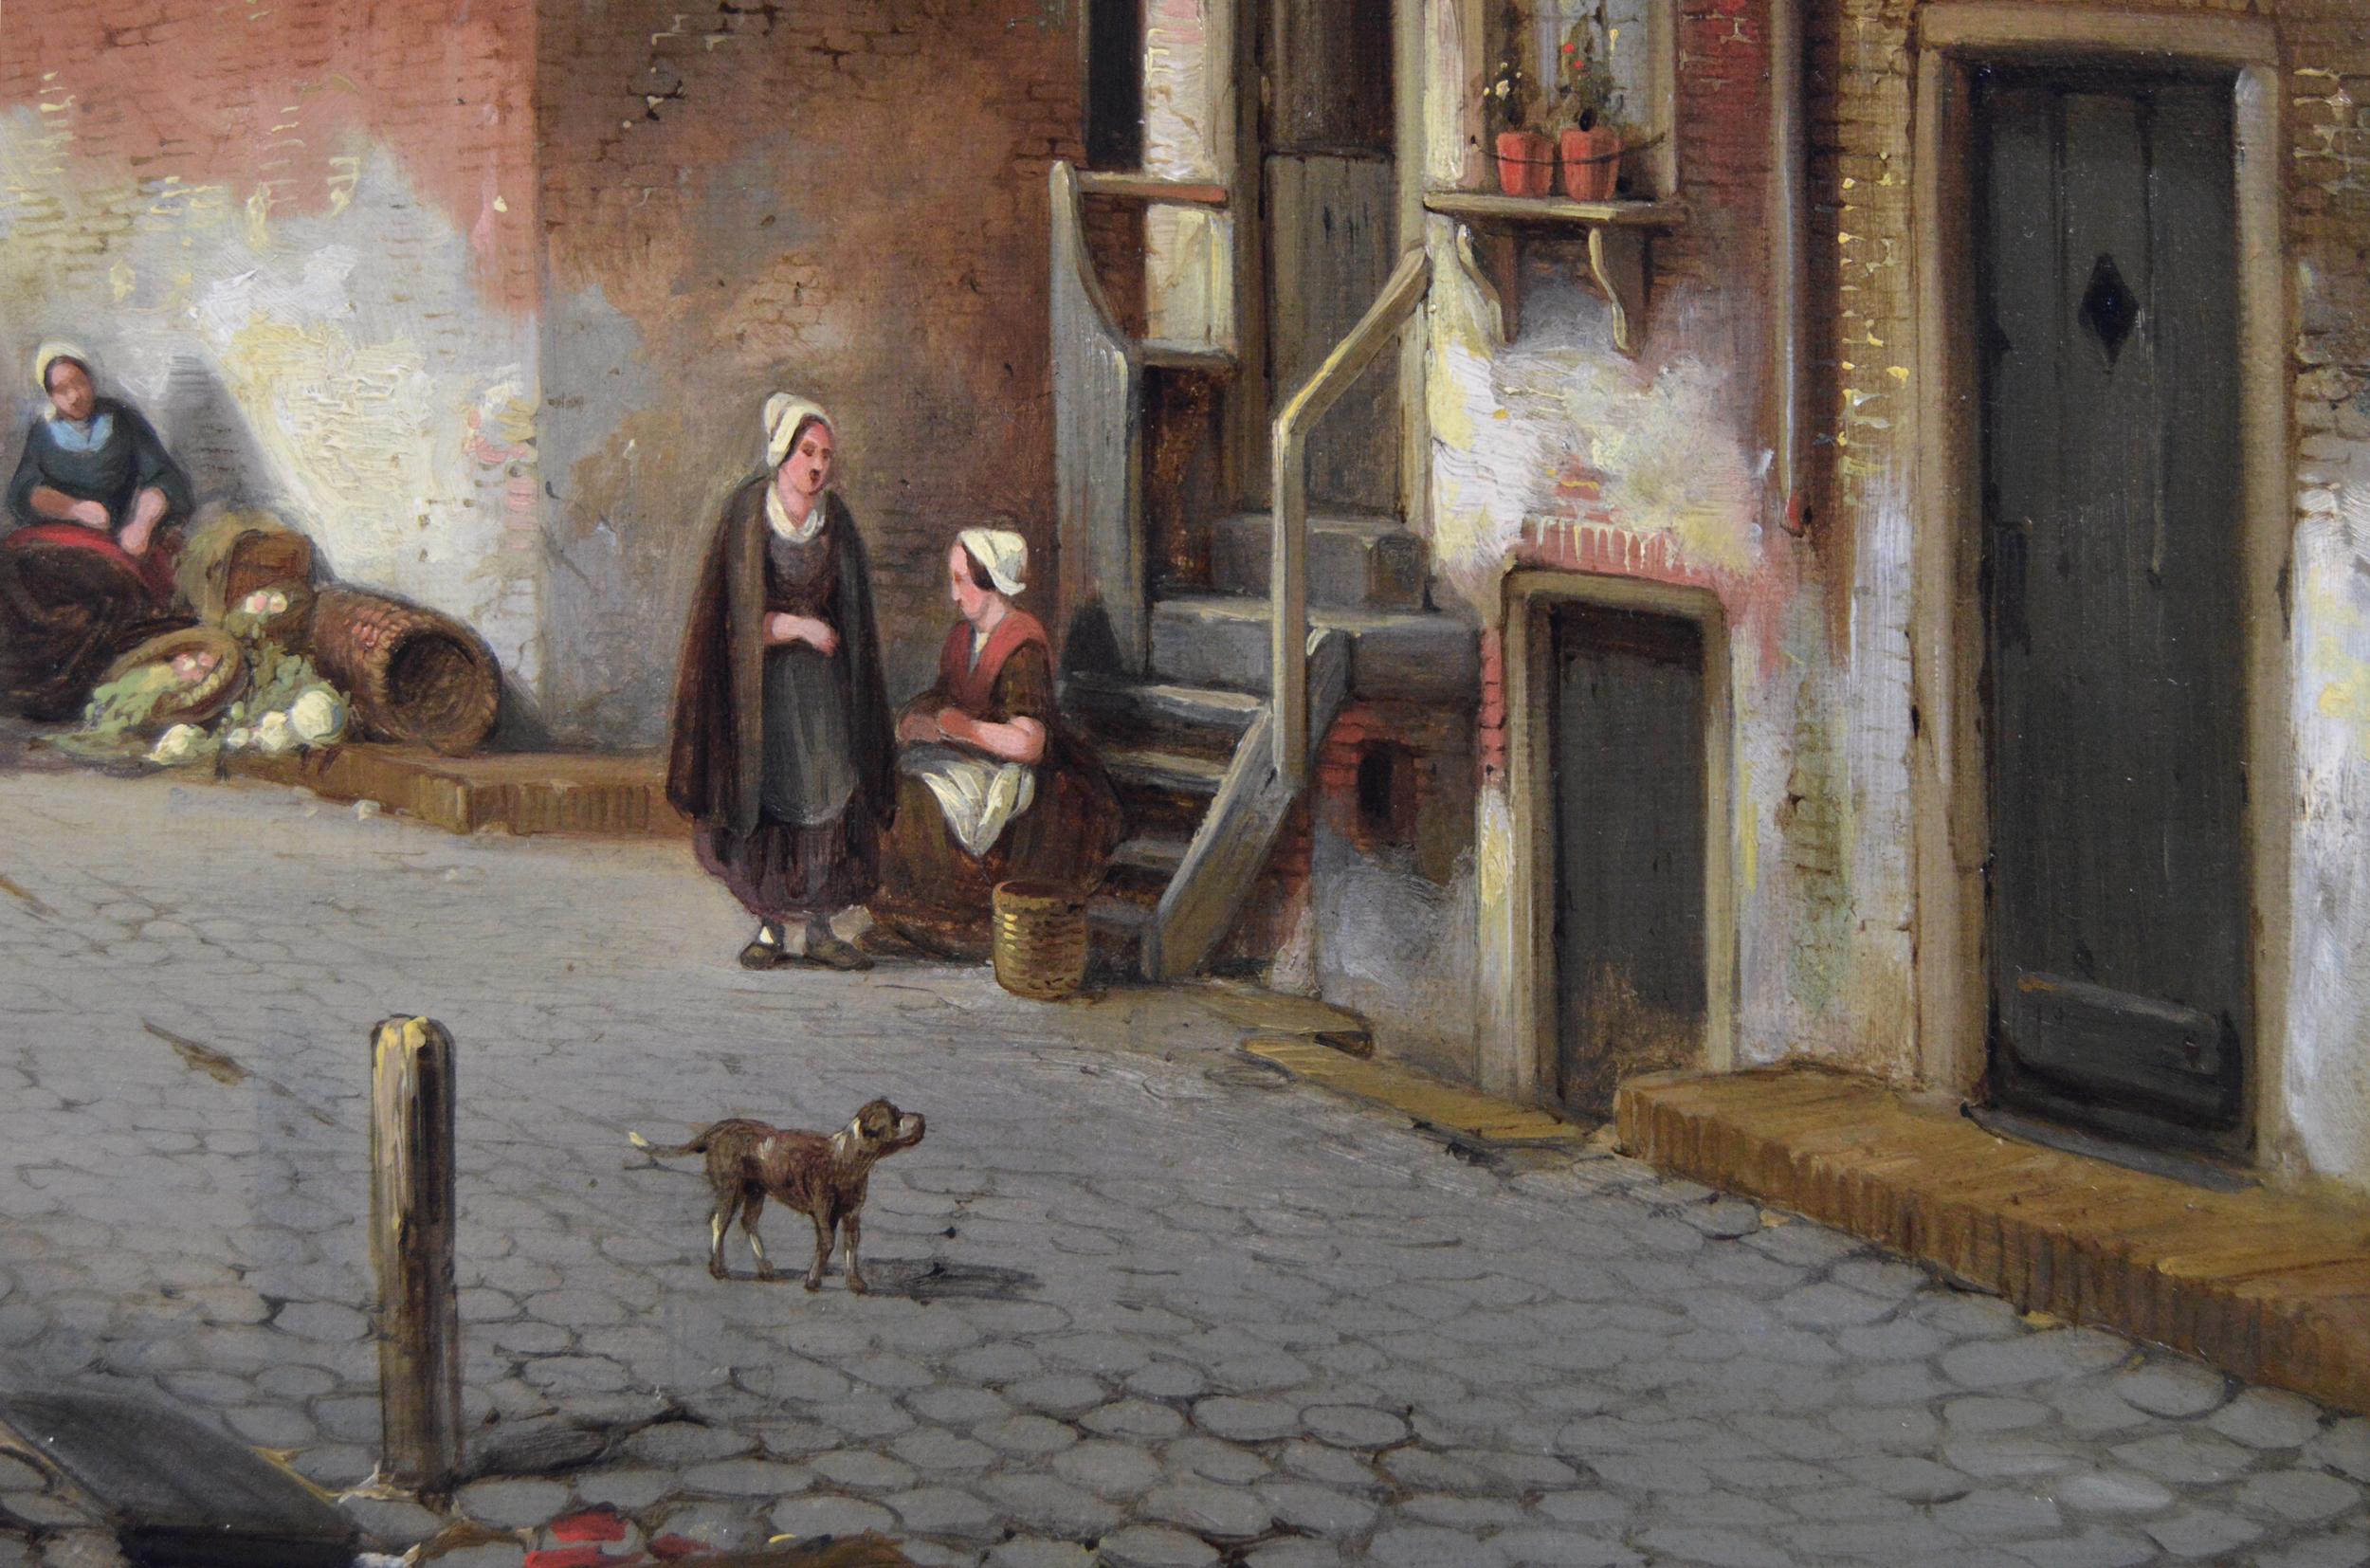 Jacques François Carabain
Belge, (1834-1933)
Jour de marché, Bruges
Huile sur toile, signée et datée (18)58	
Taille de l'image : 28.5 pouces x 35.5 pouces 
Dimensions, y compris le cadre : 40,5 pouces x 47,5 pouces

Un fabuleux paysage urbain d'un